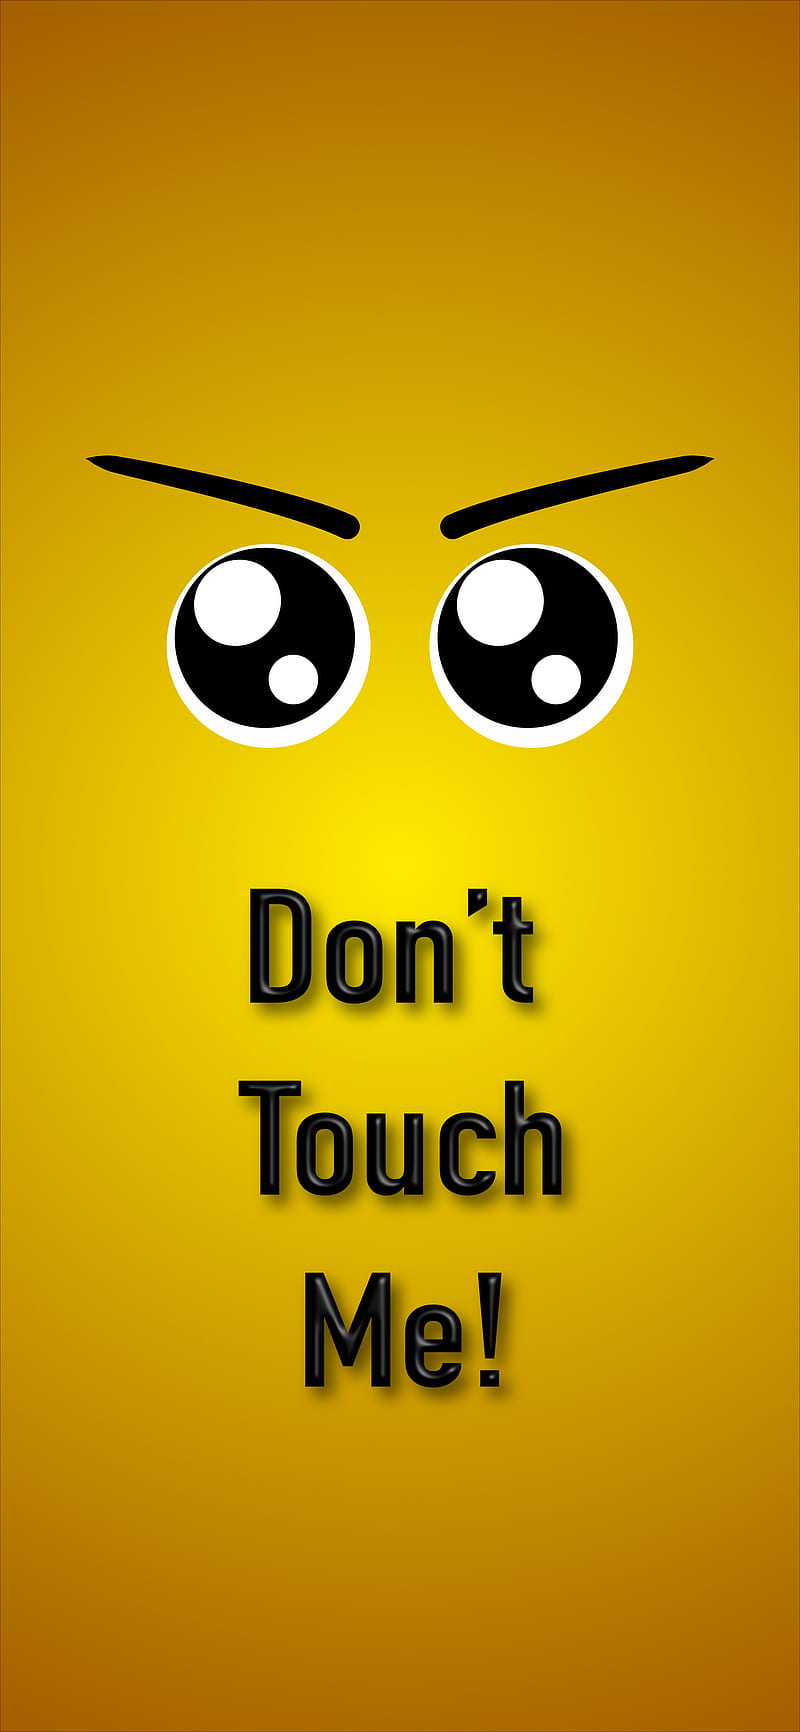 Chia sẻ bộ ảnh nền Dont Touch My Phone cực độc dành cho smartphone  Thủ  Thuật Công Nghê  Thủ thuật máy tính thủ thuật tin học phần mềm hay